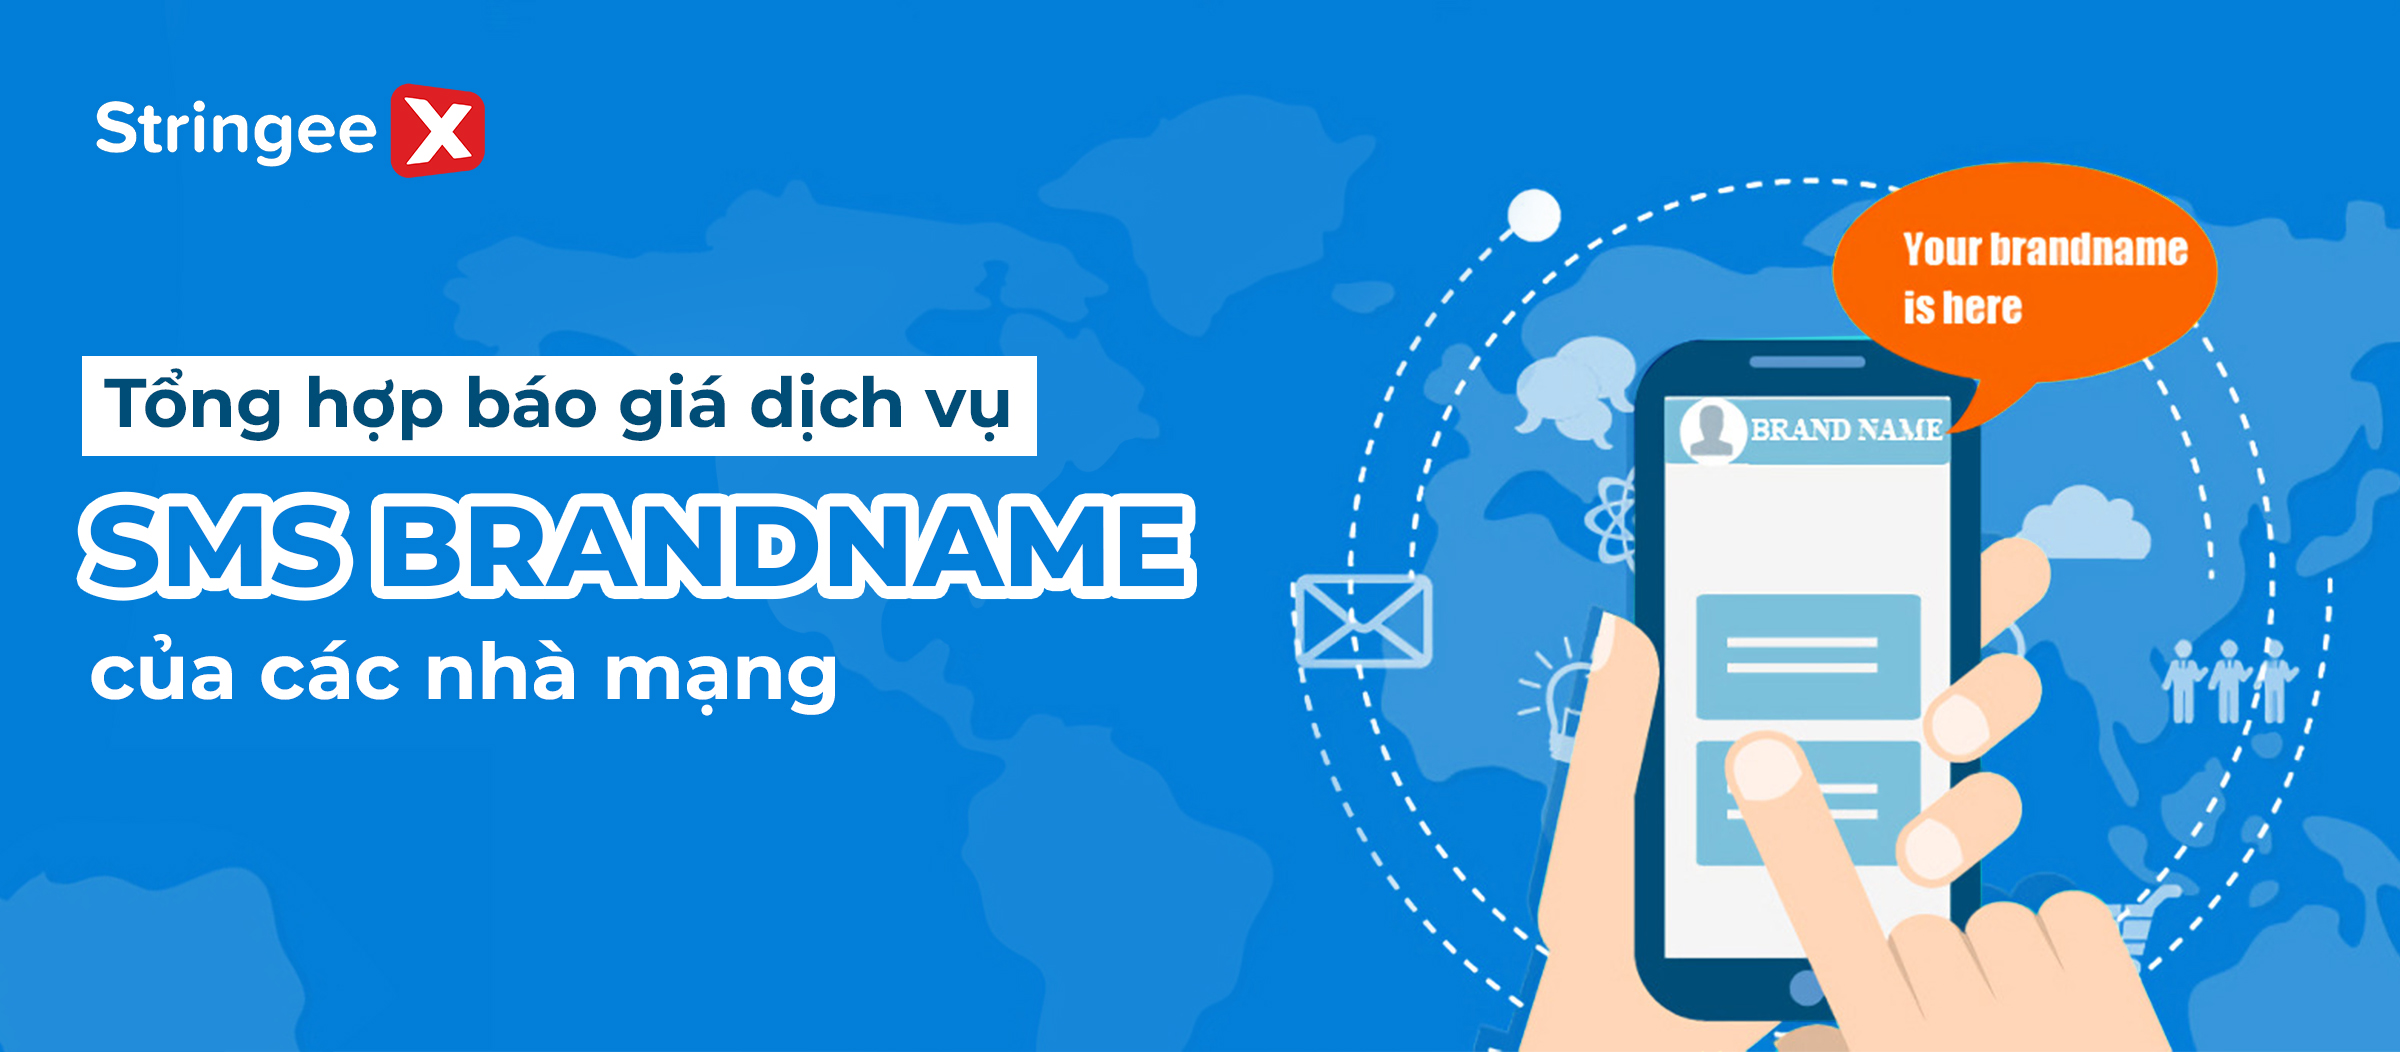 Tổng hợp báo giá SMS Brandname của các nhà mạng